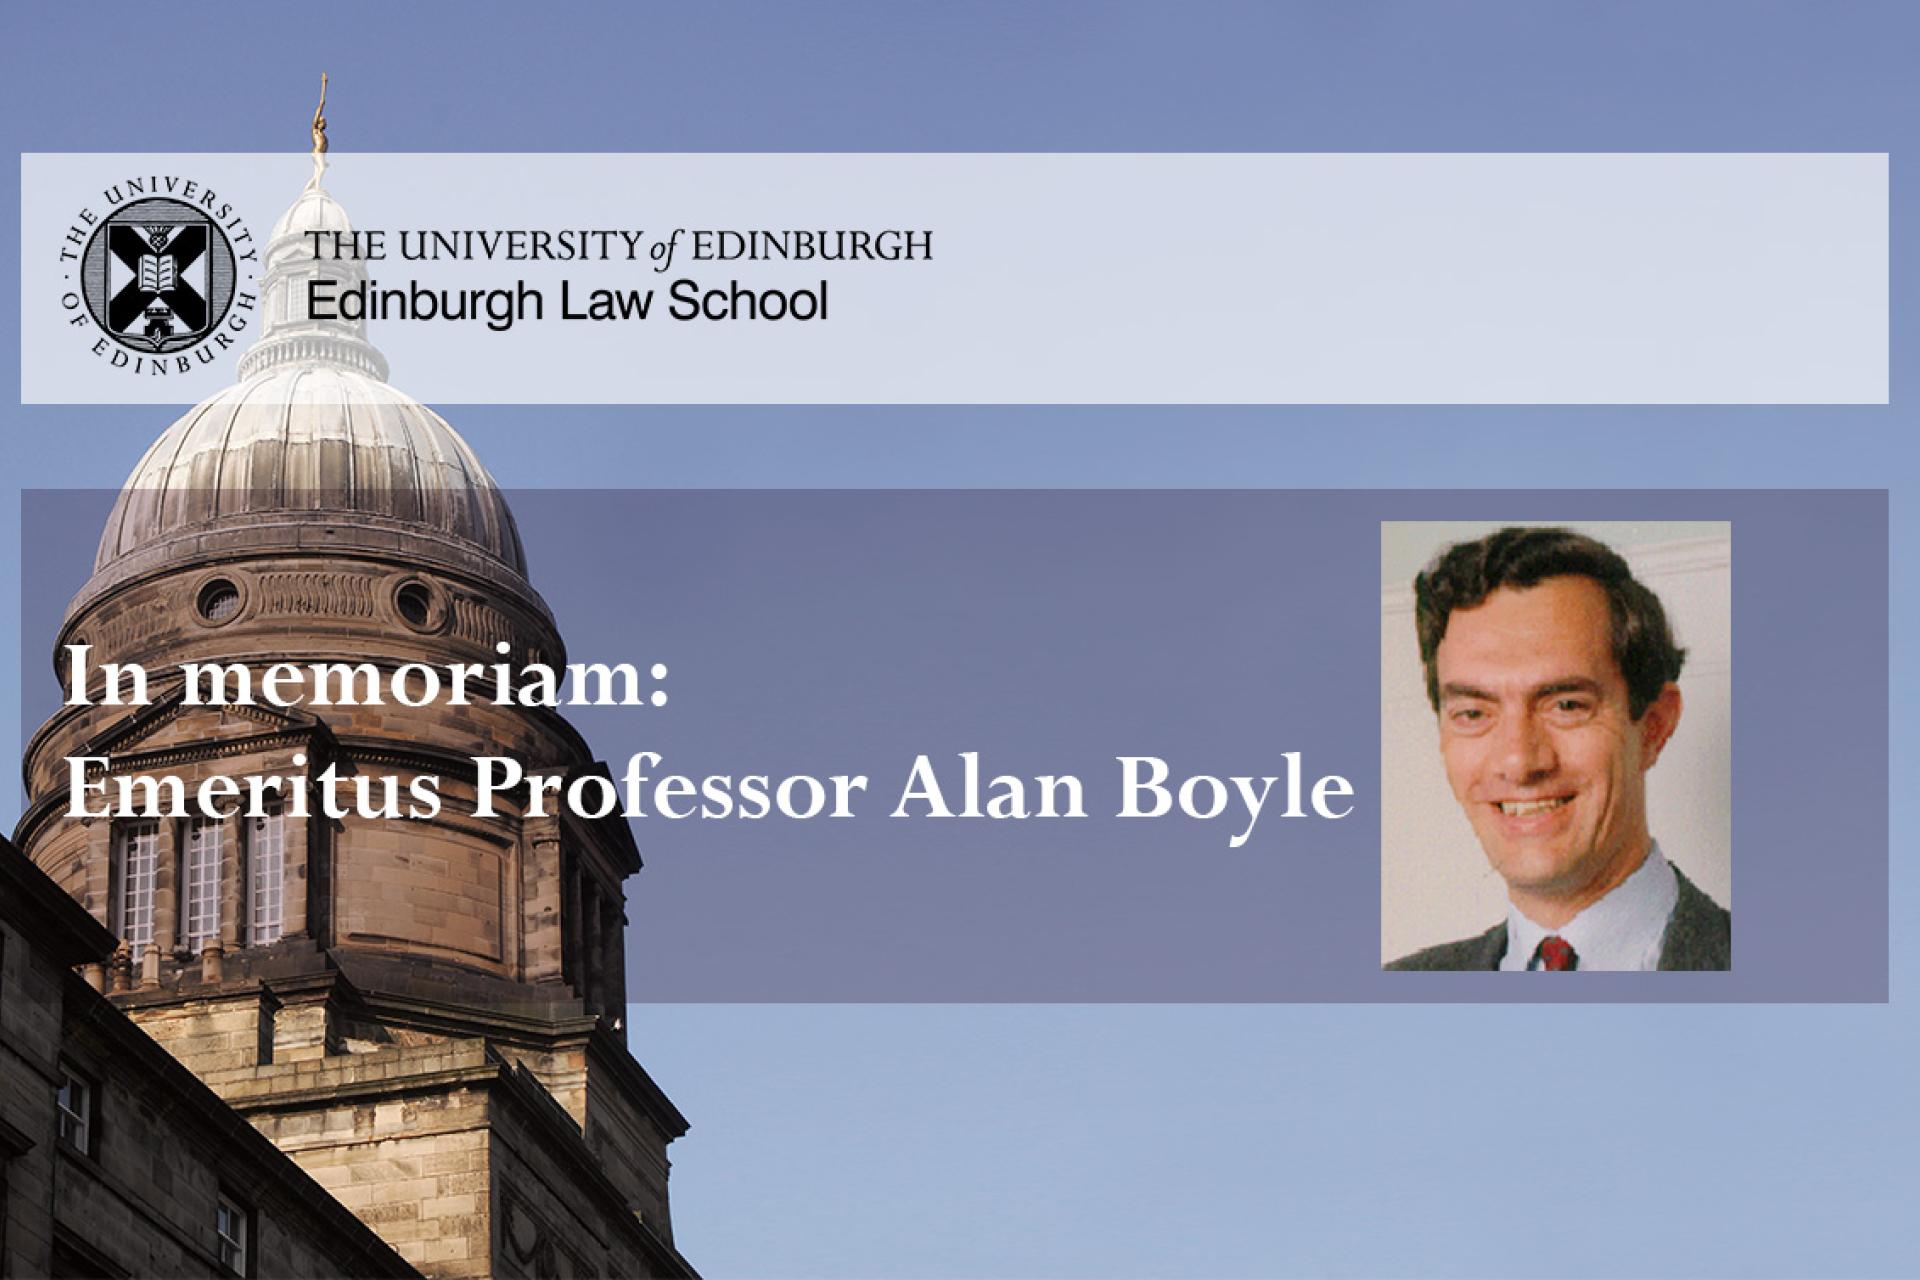 In memoriam: Emeritus Professor Alan Boyle